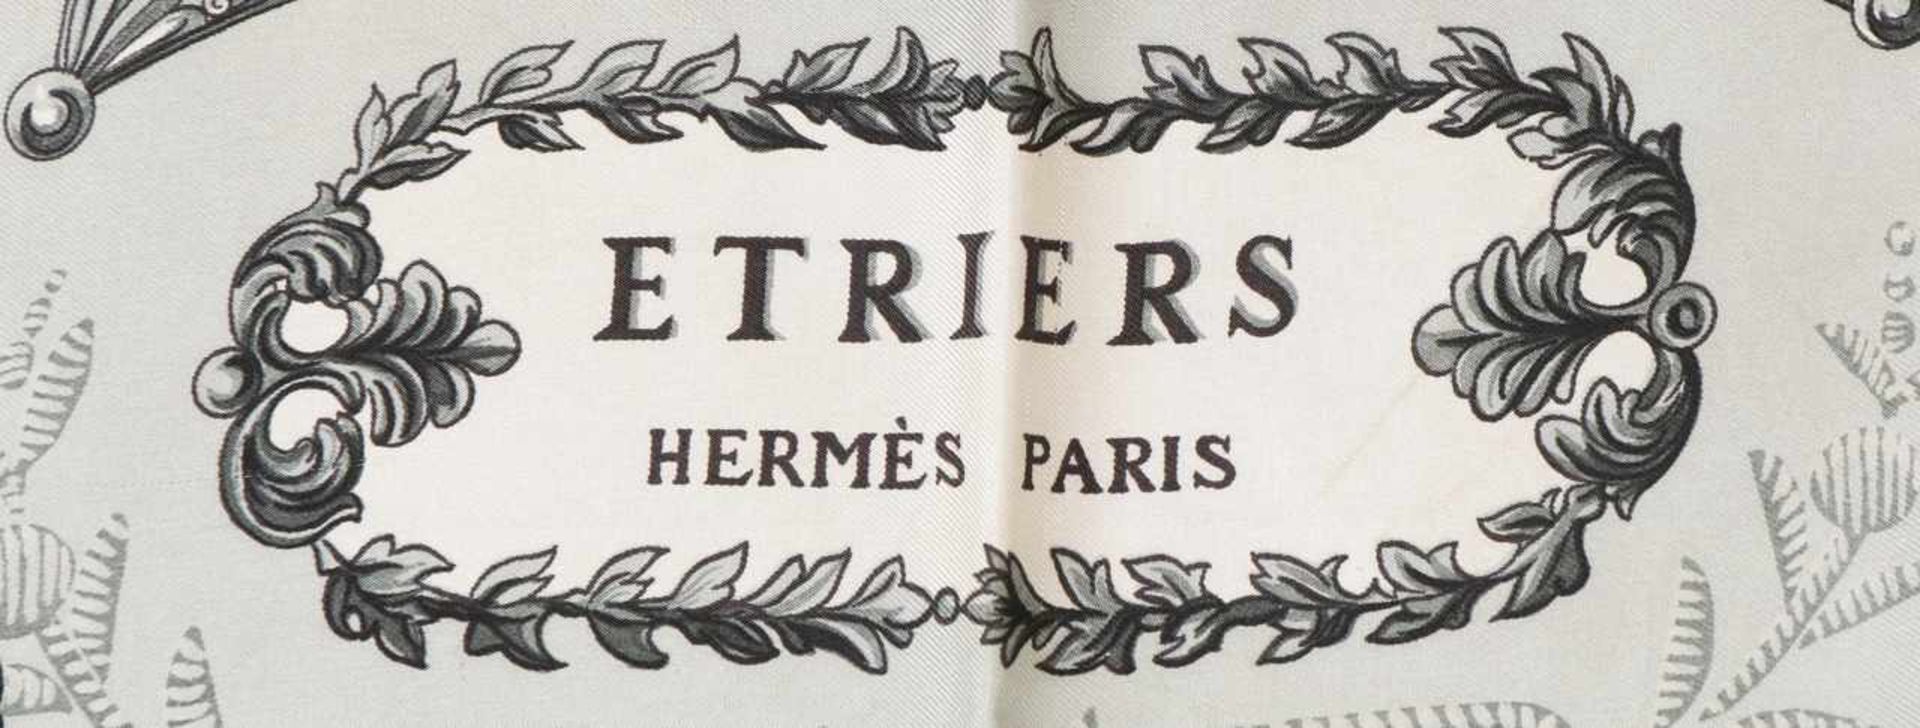 HERMÈS Seidencarré ¨Etriers¨ Entwurf F. de la Perriere, ca. 90x90cm, leicht fleckig - Bild 2 aus 2